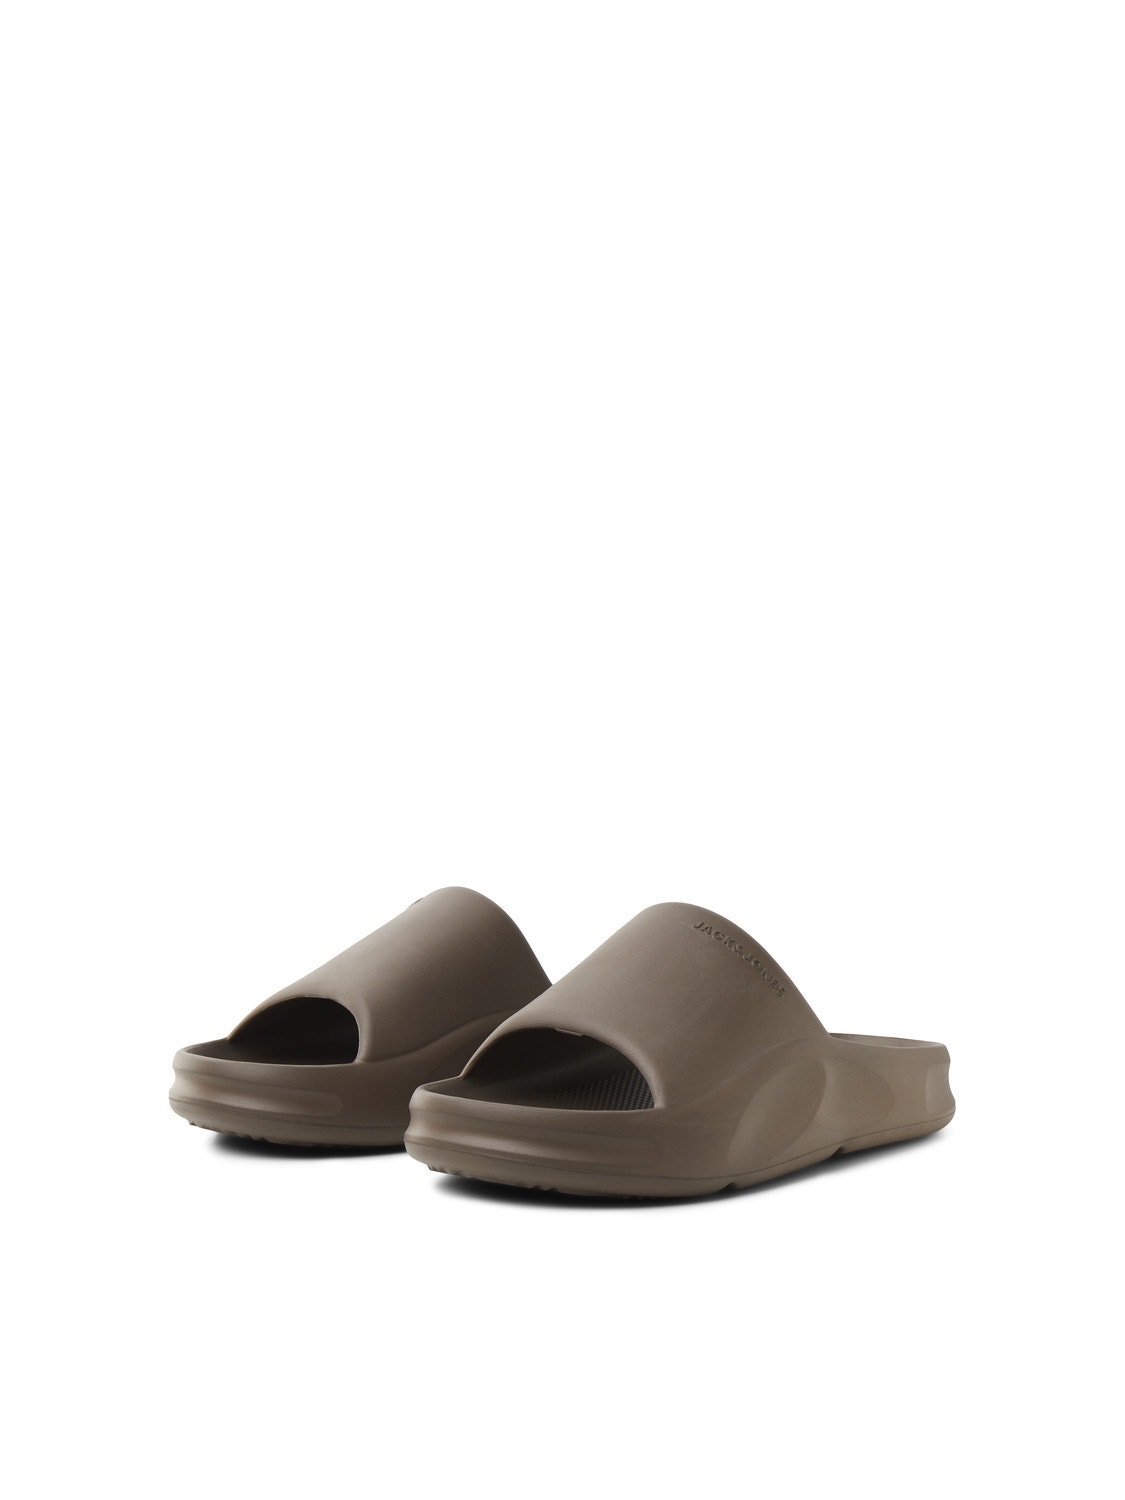 Jack & Jones Sandals -Carafe - 12251282